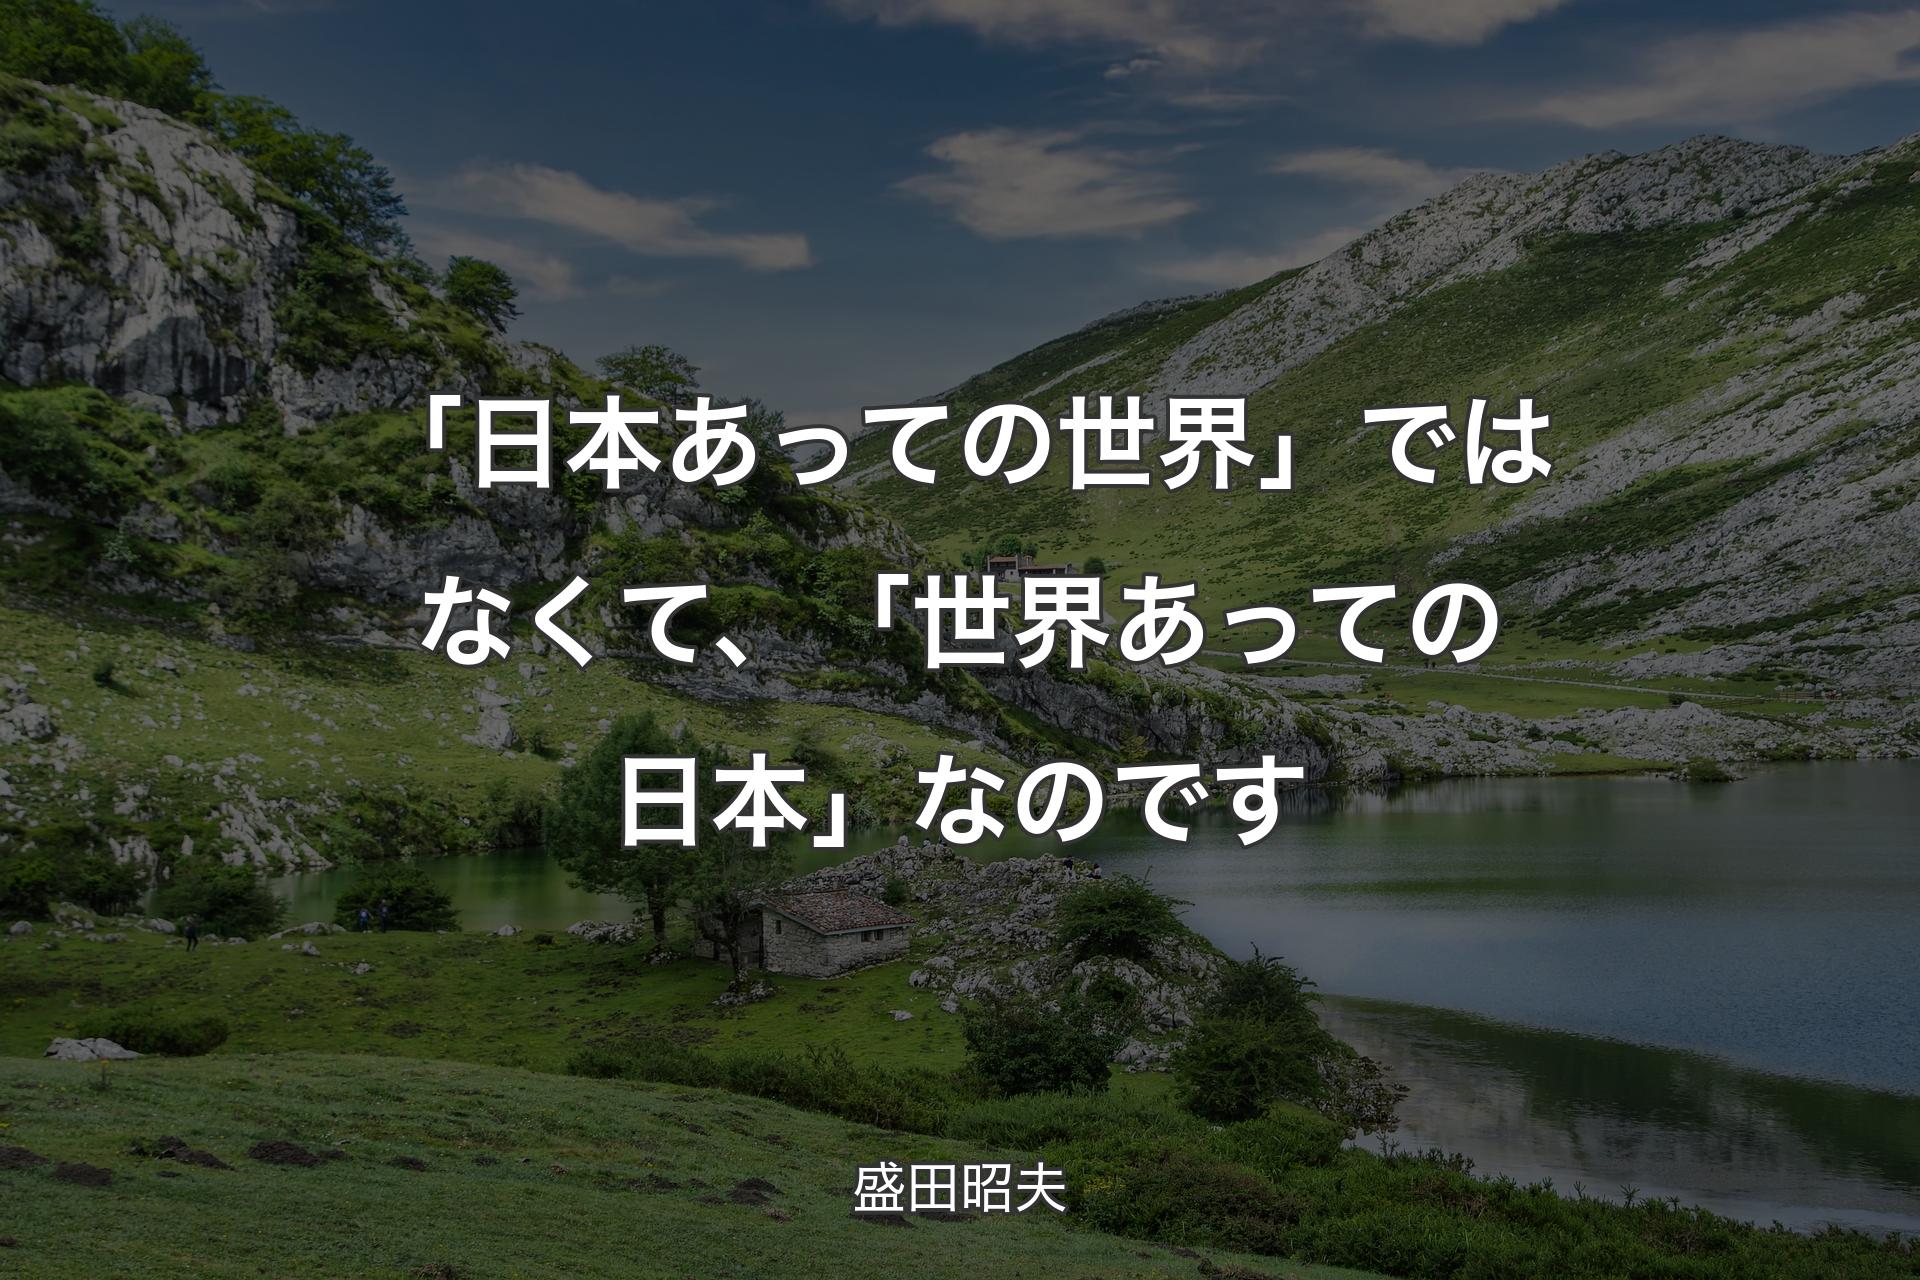 「日本あっての世界」ではなくて、「世界あっての日本」なのです - 盛田昭夫